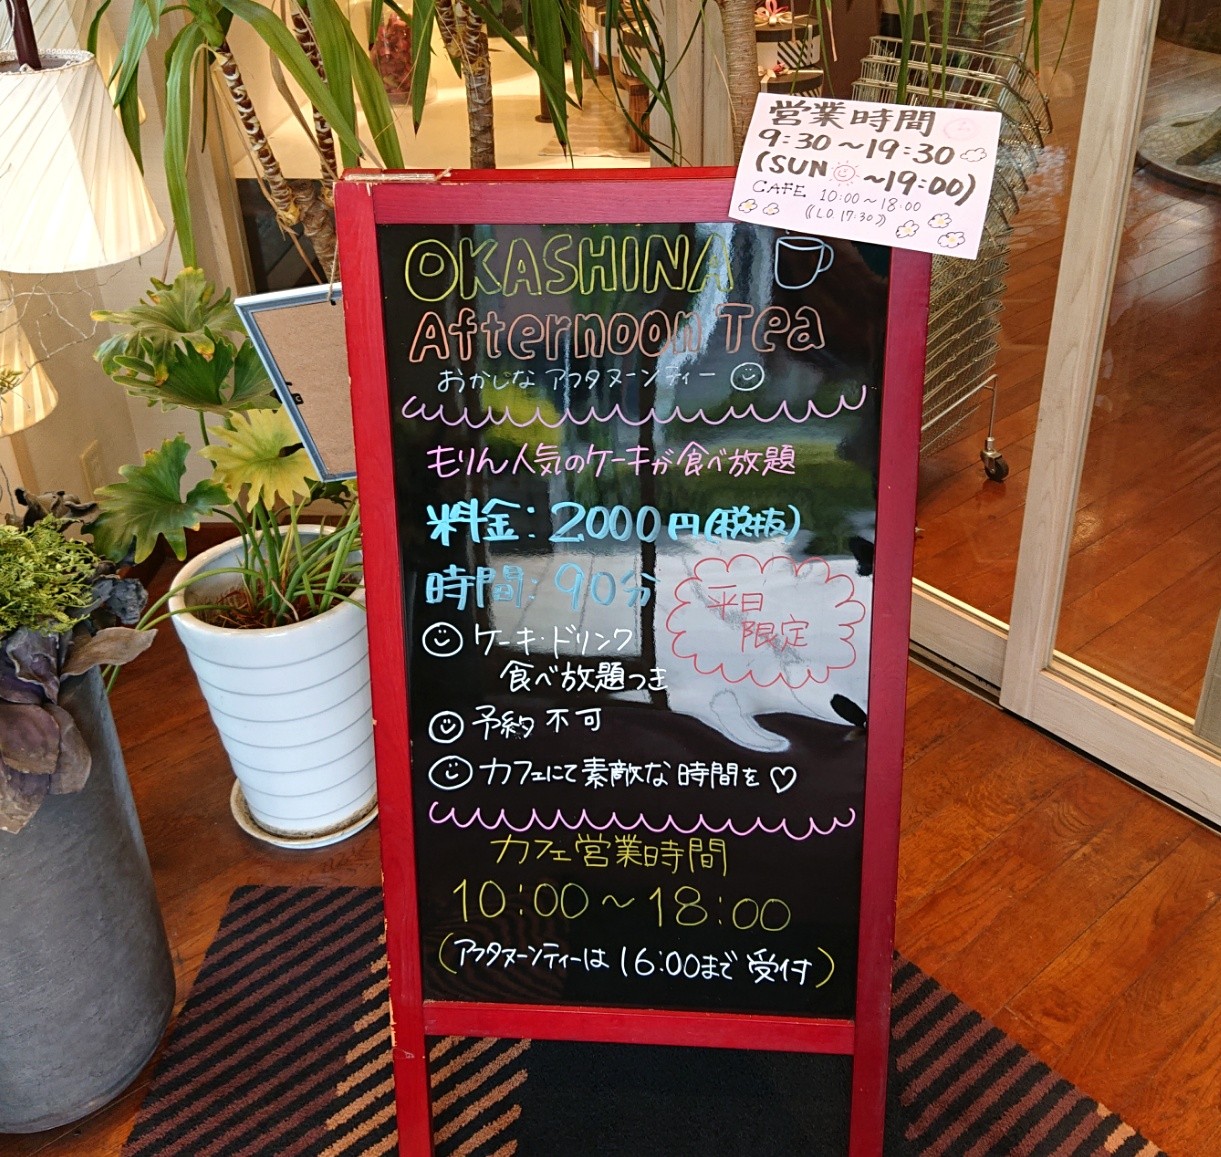 菓匠もりん 高松店 マユリ ナの暇つぶし 香川のお店 食べ歩き